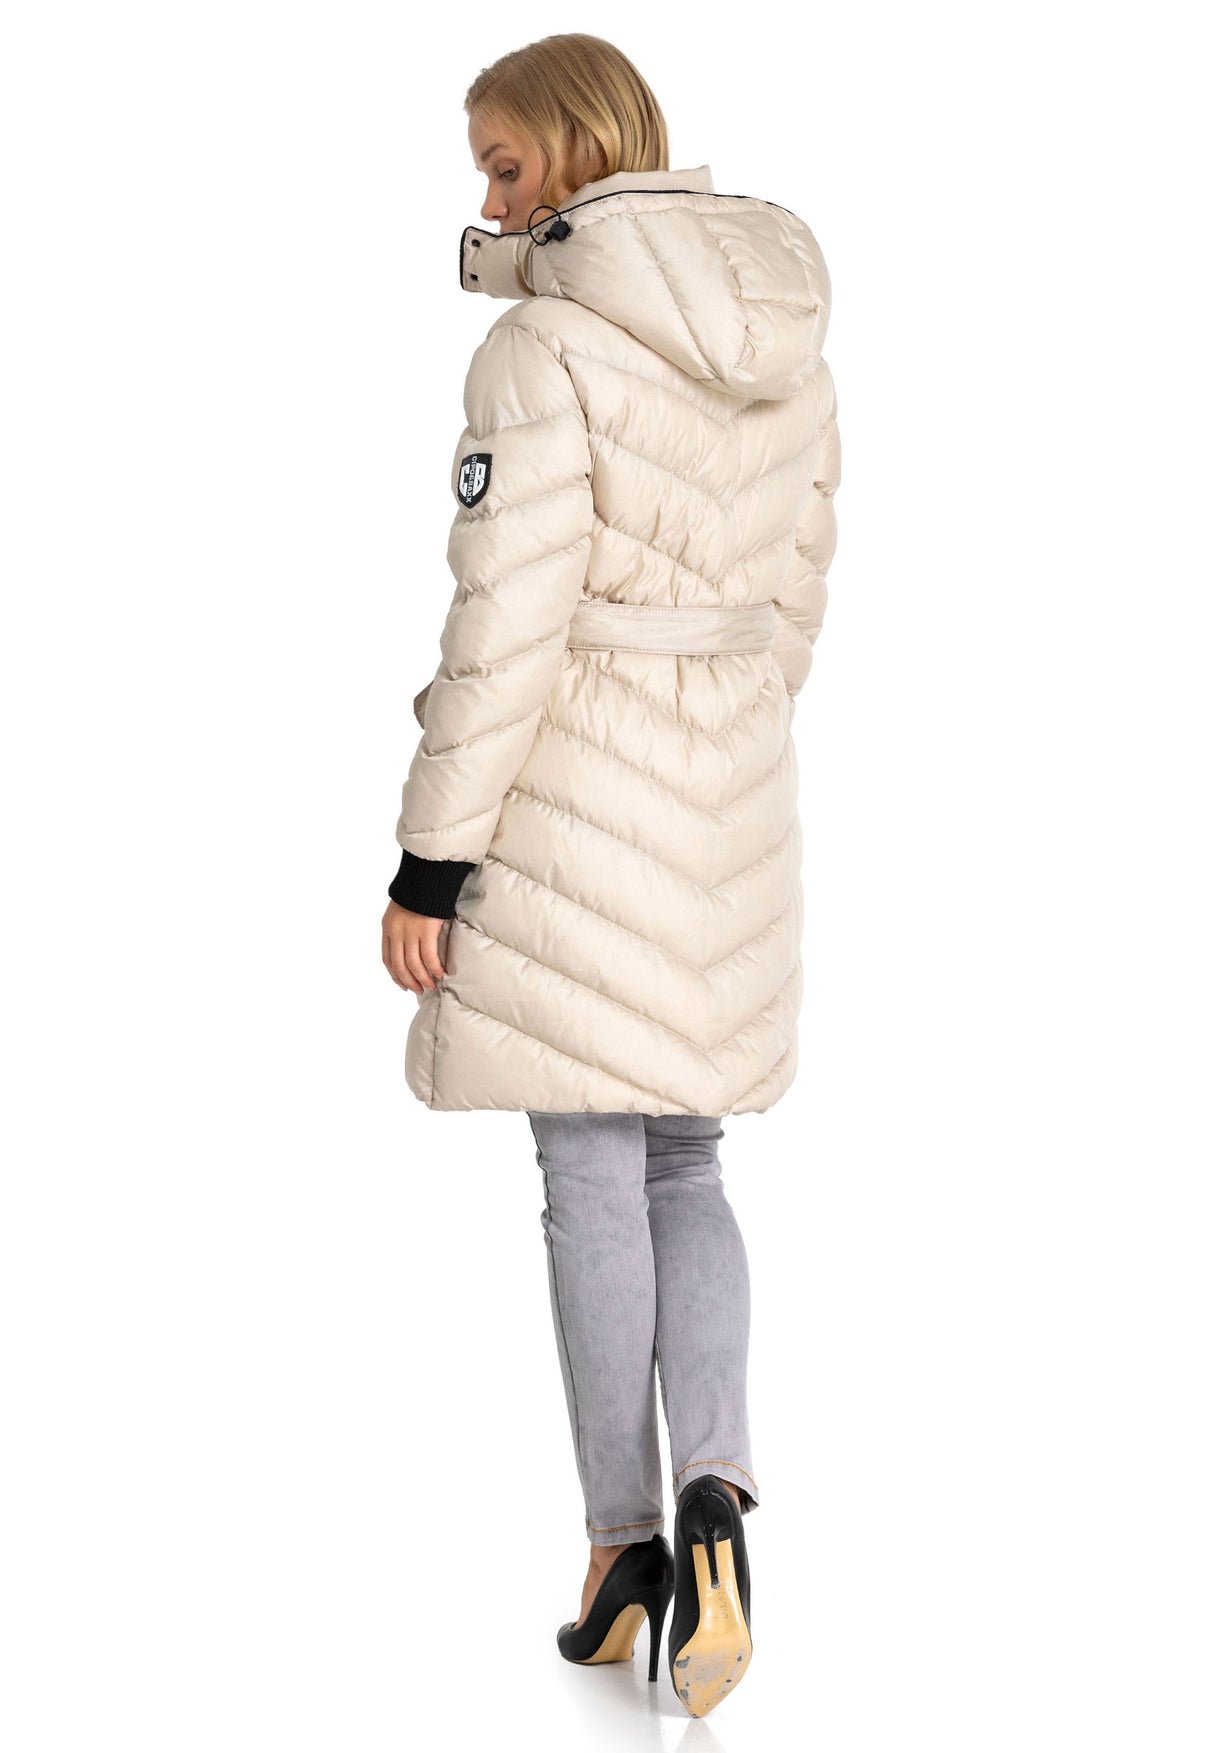 WM135 Damen Winterjacke Steppmantel  mit abnehmbarer Kapuze